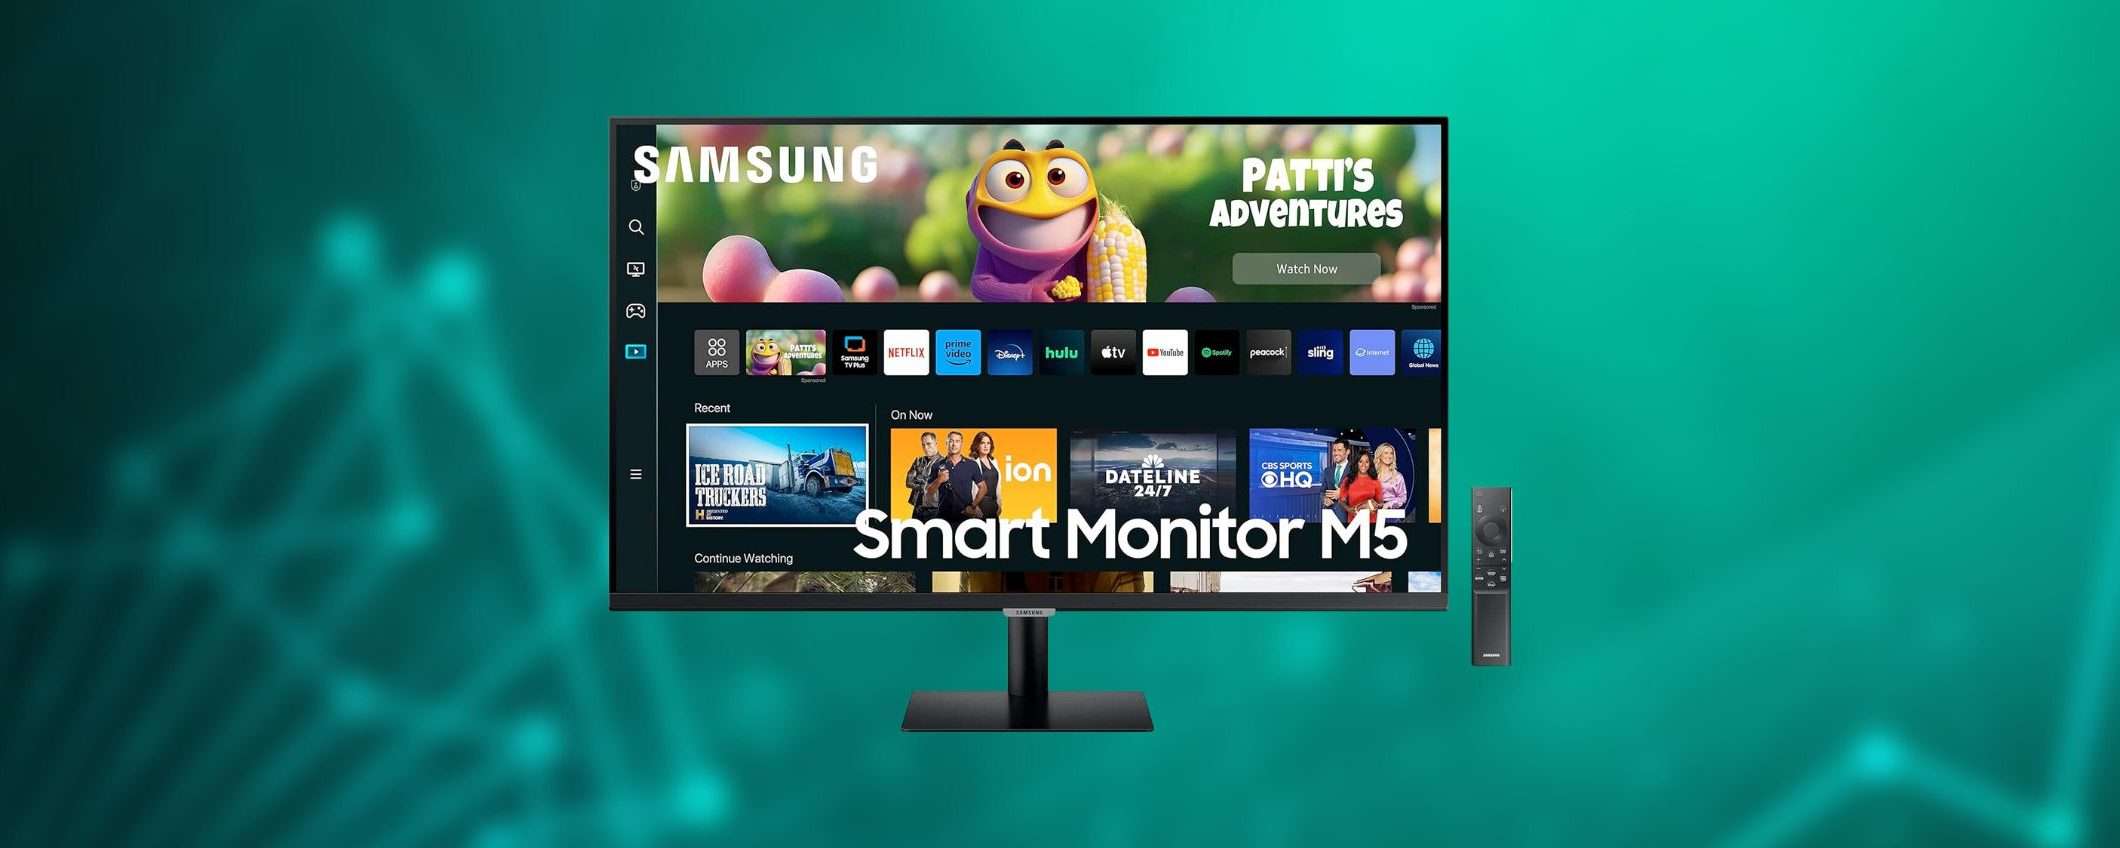 Samsung Smart Monitor M5: su eBay è disponibile al prezzo più basso DI SEMPRE